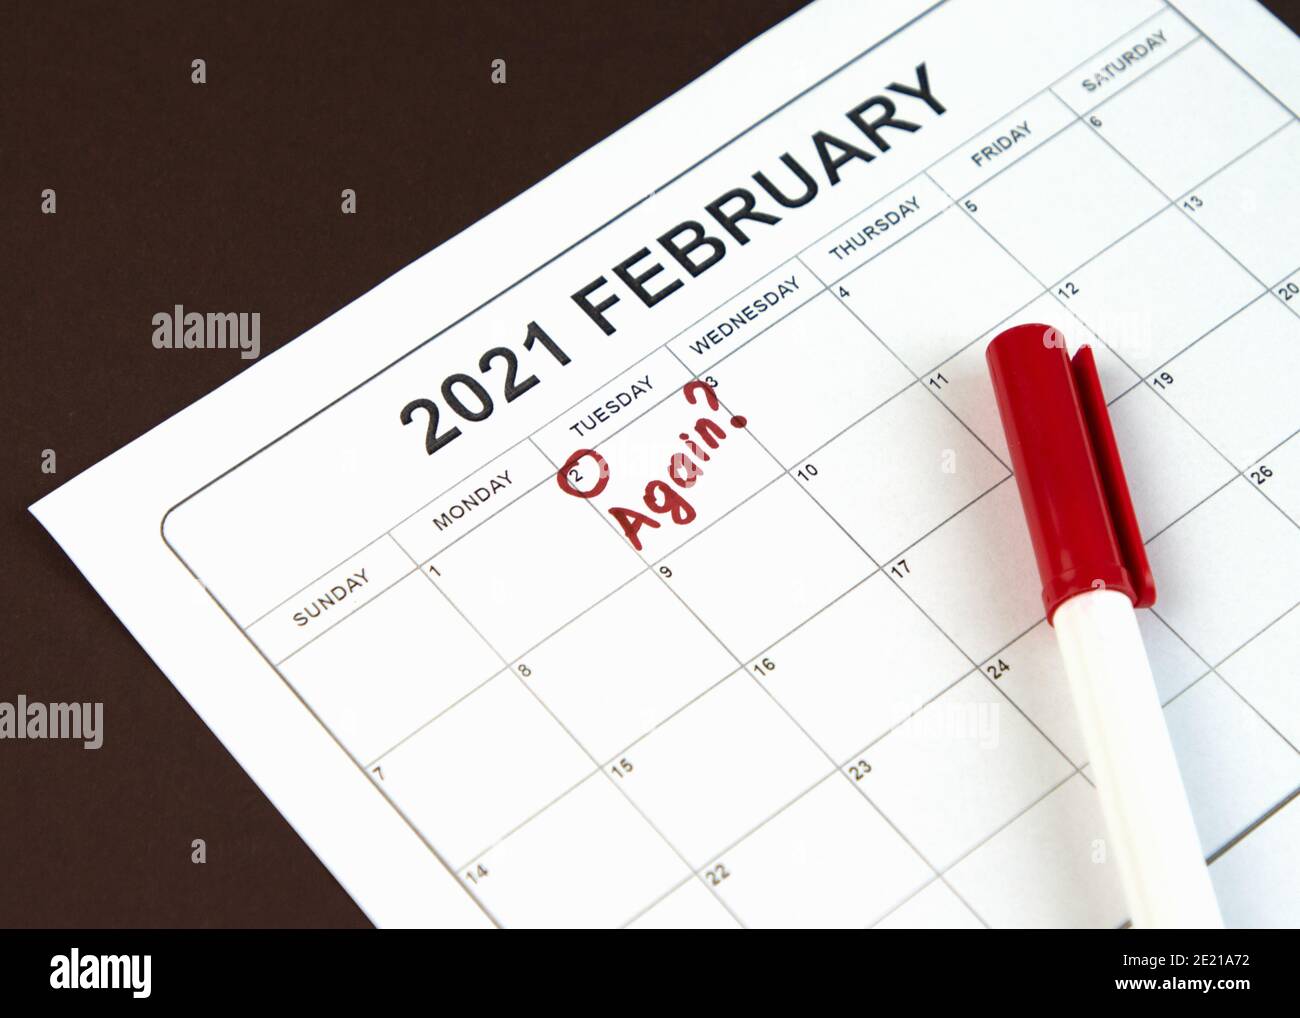 Concetto di giorno di Groundhog. La parola Againe è scritta sul calendario il 02 febbraio. Sfondo marrone. Disposizione piatta. Foto Stock